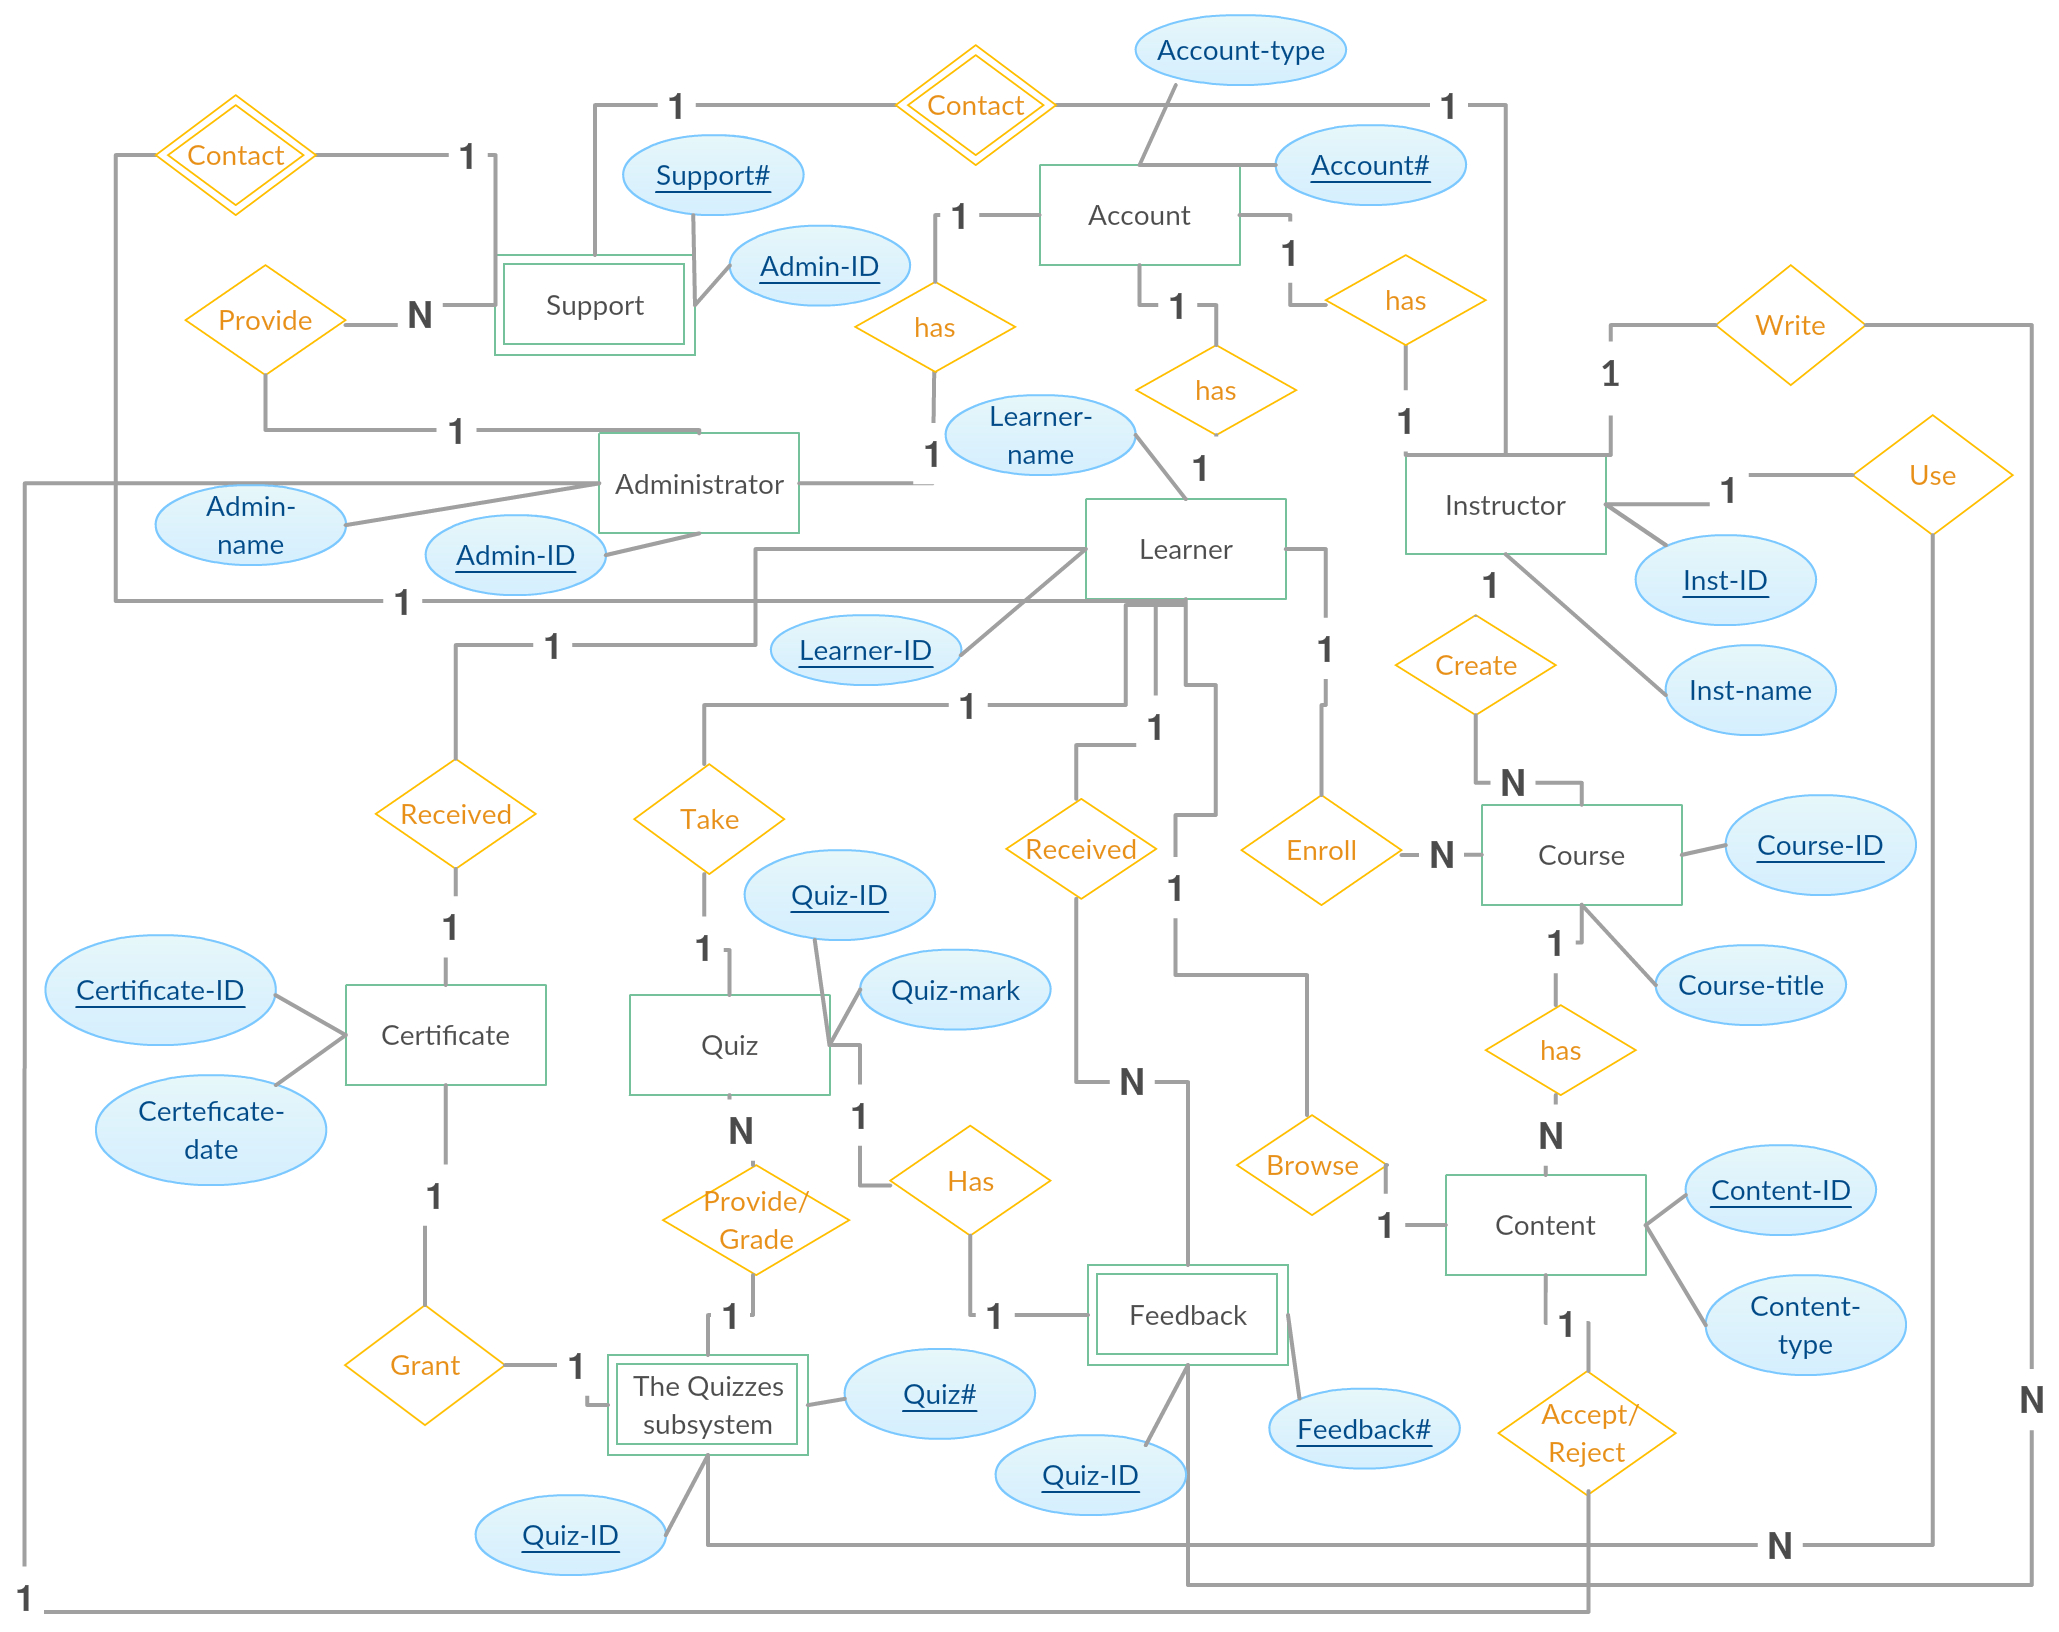 Entity Relationship Diagram (Er Diagram) Of E-Learning regarding Erd Entity Relationship Diagram Examples